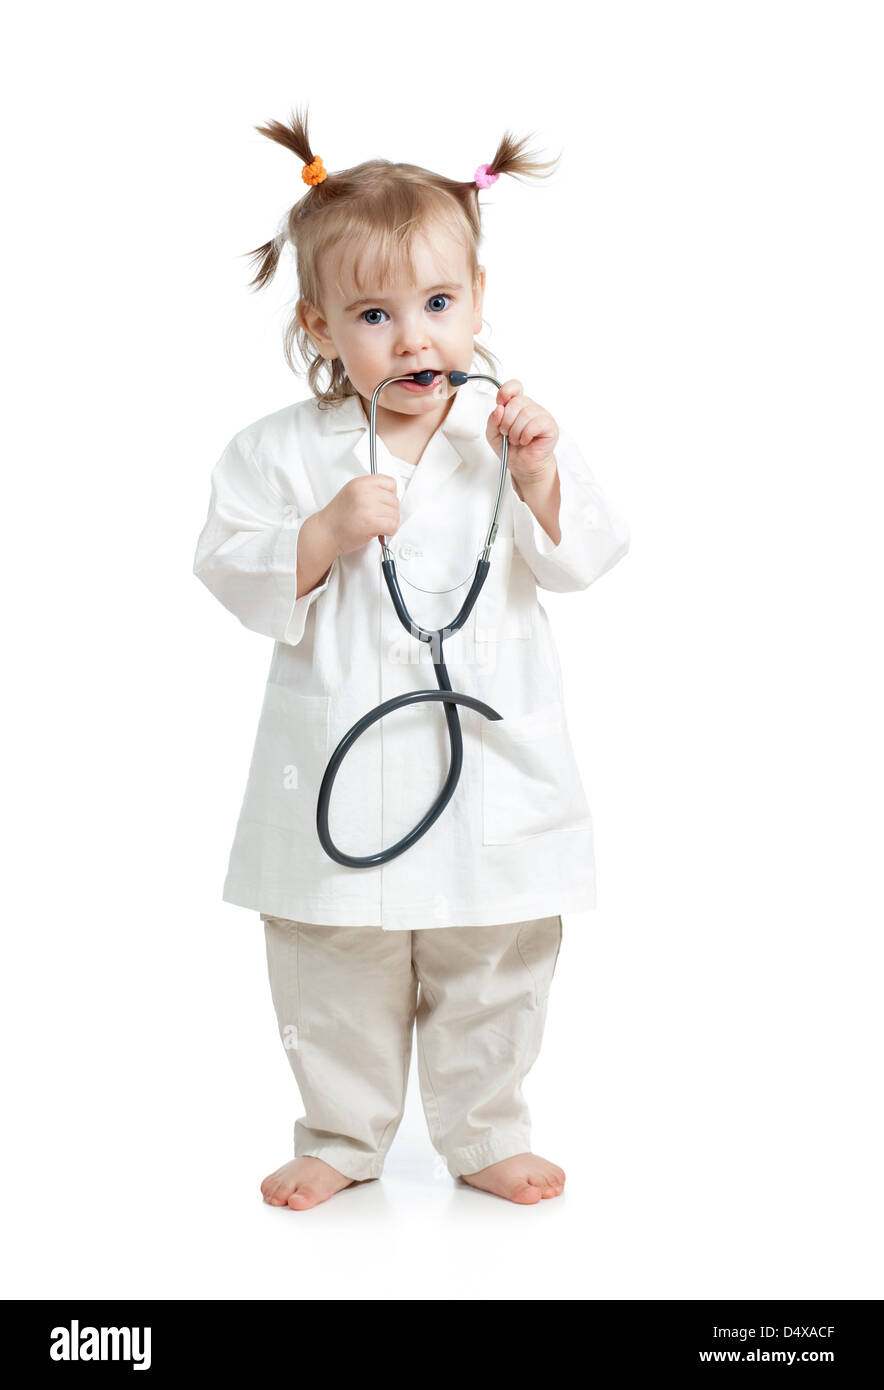 Lustiges Kind Mädchen mit Arzt Kleidung auf weißem Hintergrund Stockfoto